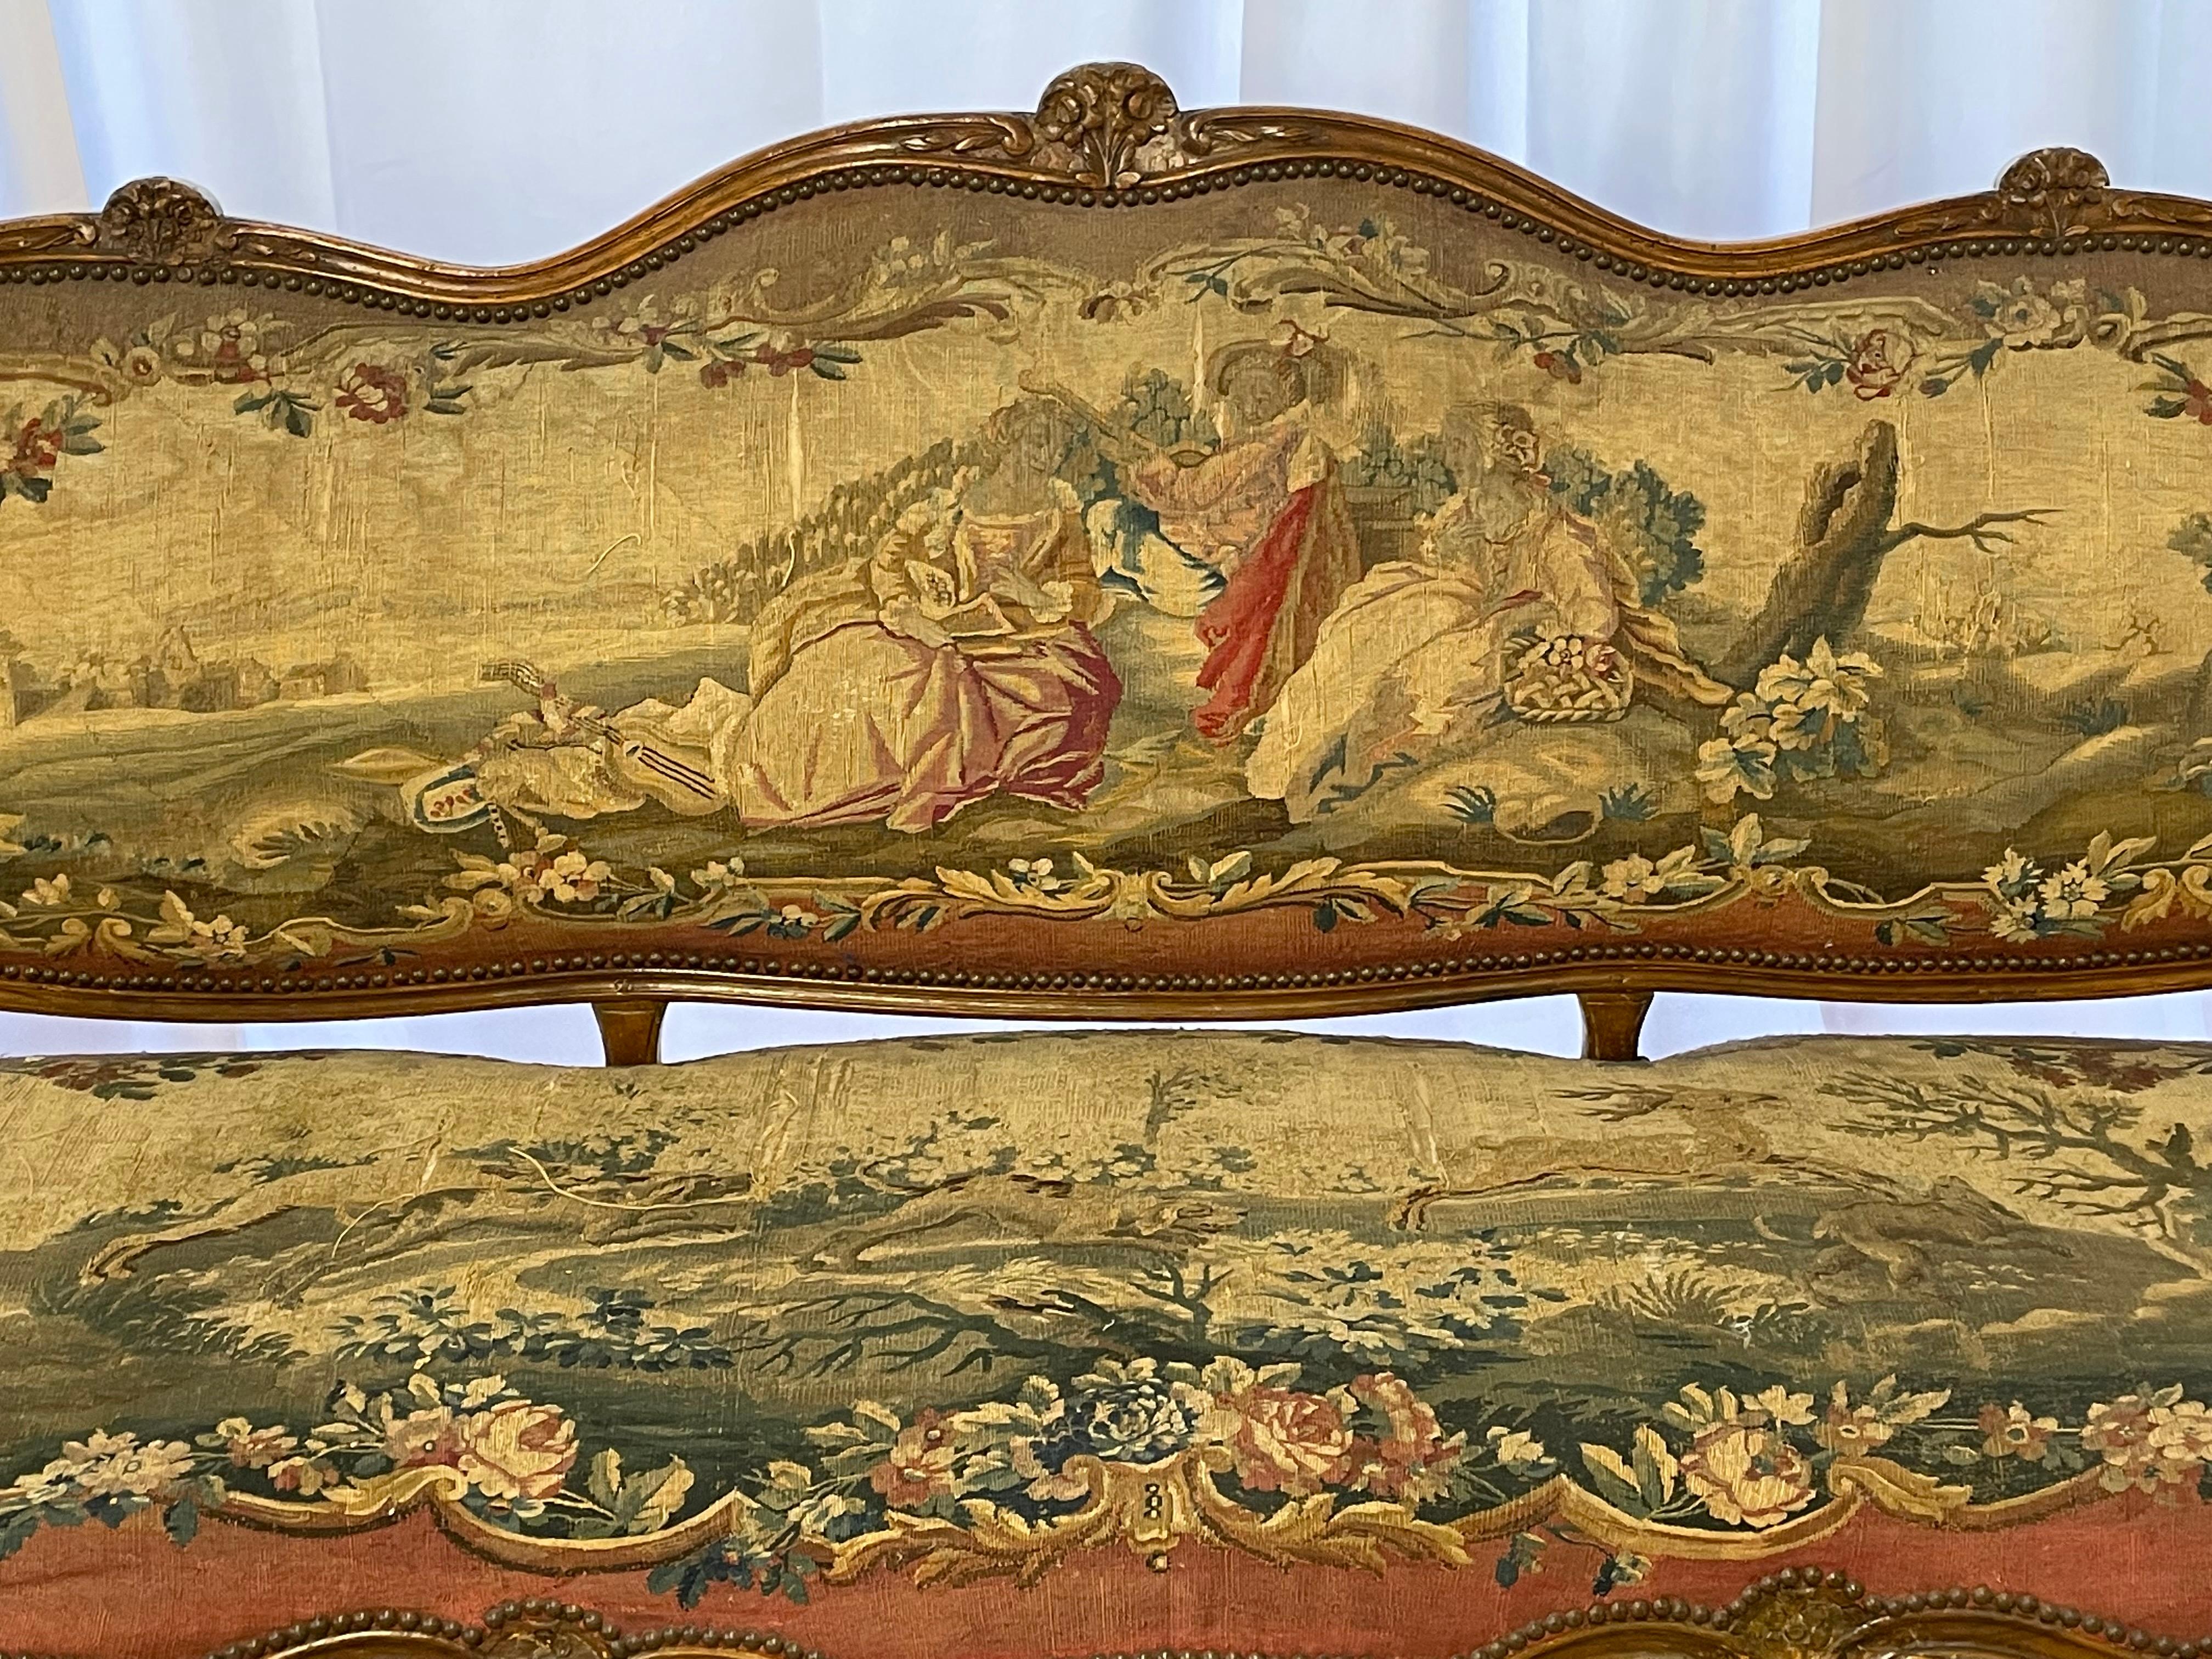 Louis-XV-Sofa aus Obstholz, spätes 18. Jahrhundert, gewölbte und gepolsterte Rückenlehne mit floralem Wappen, gepolsterte, geschwungene Armlehnen, die mit dem geformten Sitz verbunden sind, auf geformten Cabriole-Beinen mit floralem Kopf und